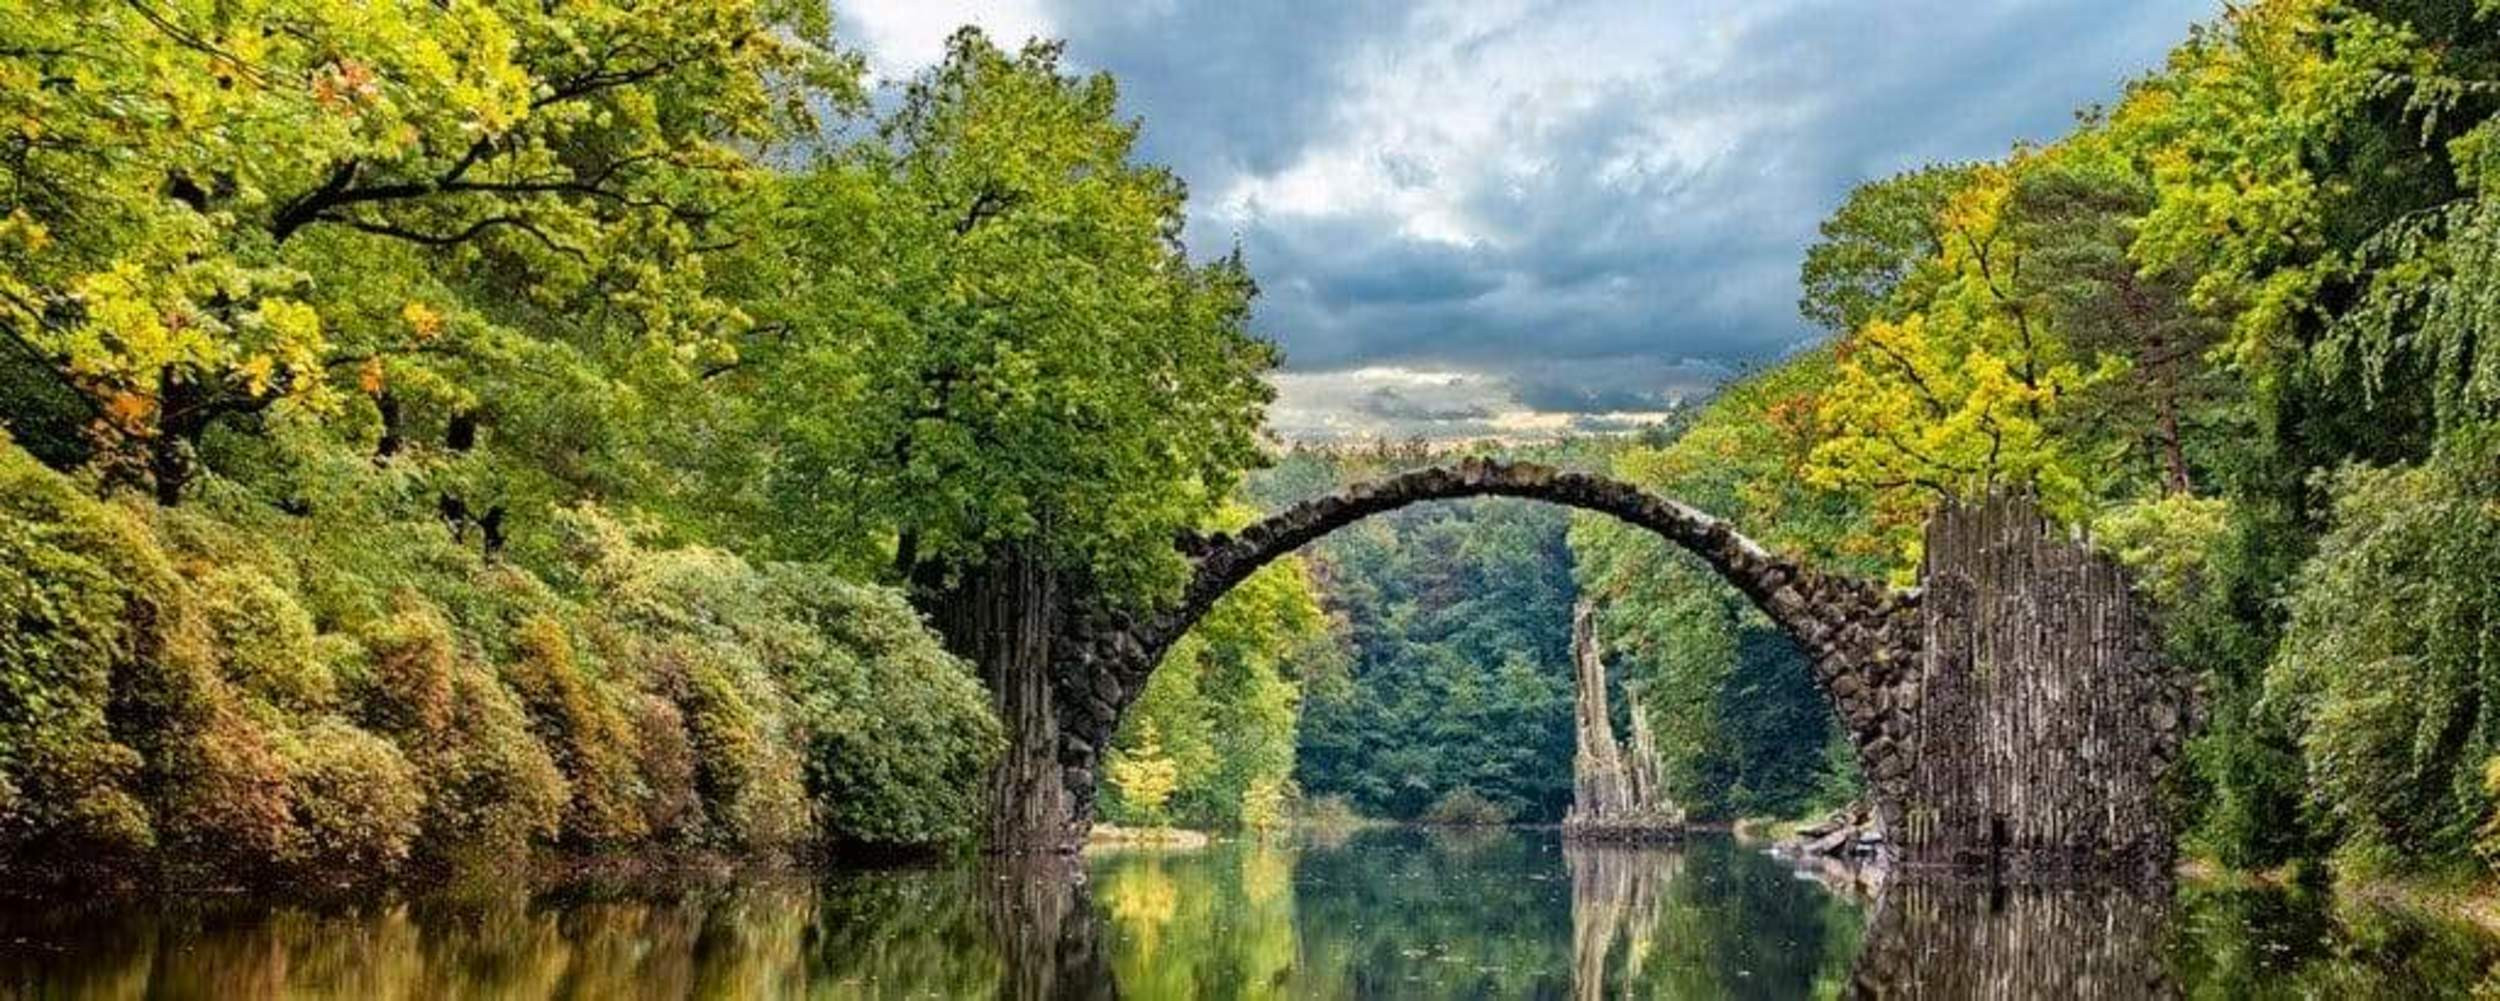 Fotobehang - Arch Bridge 375x150cm - Vliesbehang